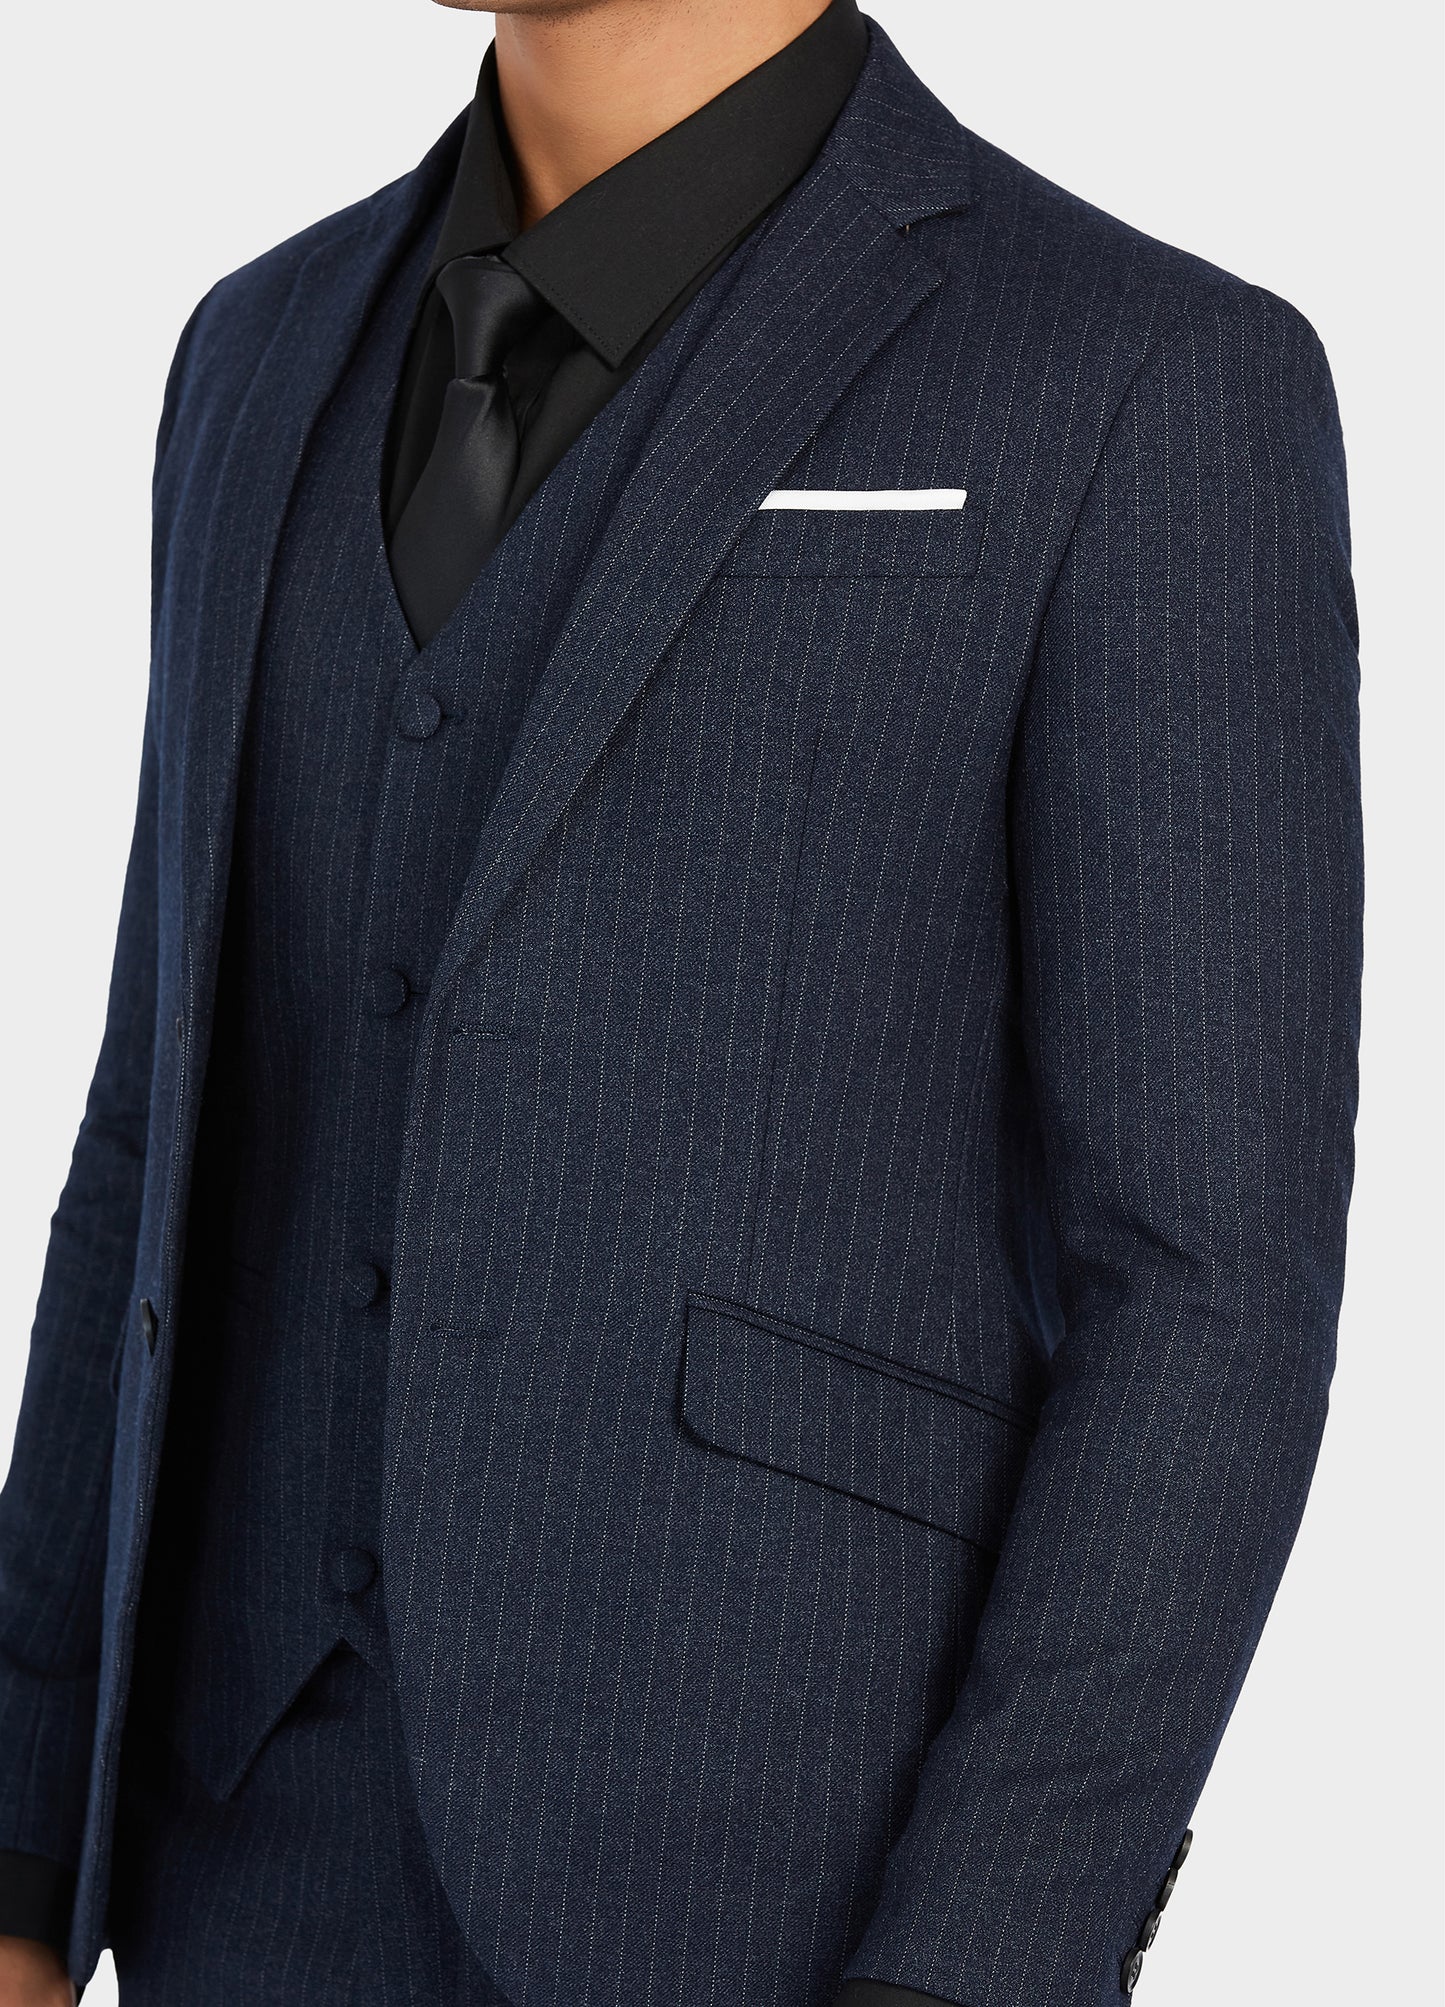 1PA1 Men's 3 Pieces Slim Fit Pinstripe Vested Suit, Wedding Tuxedo - Two Button Jacket, Vest & Pants